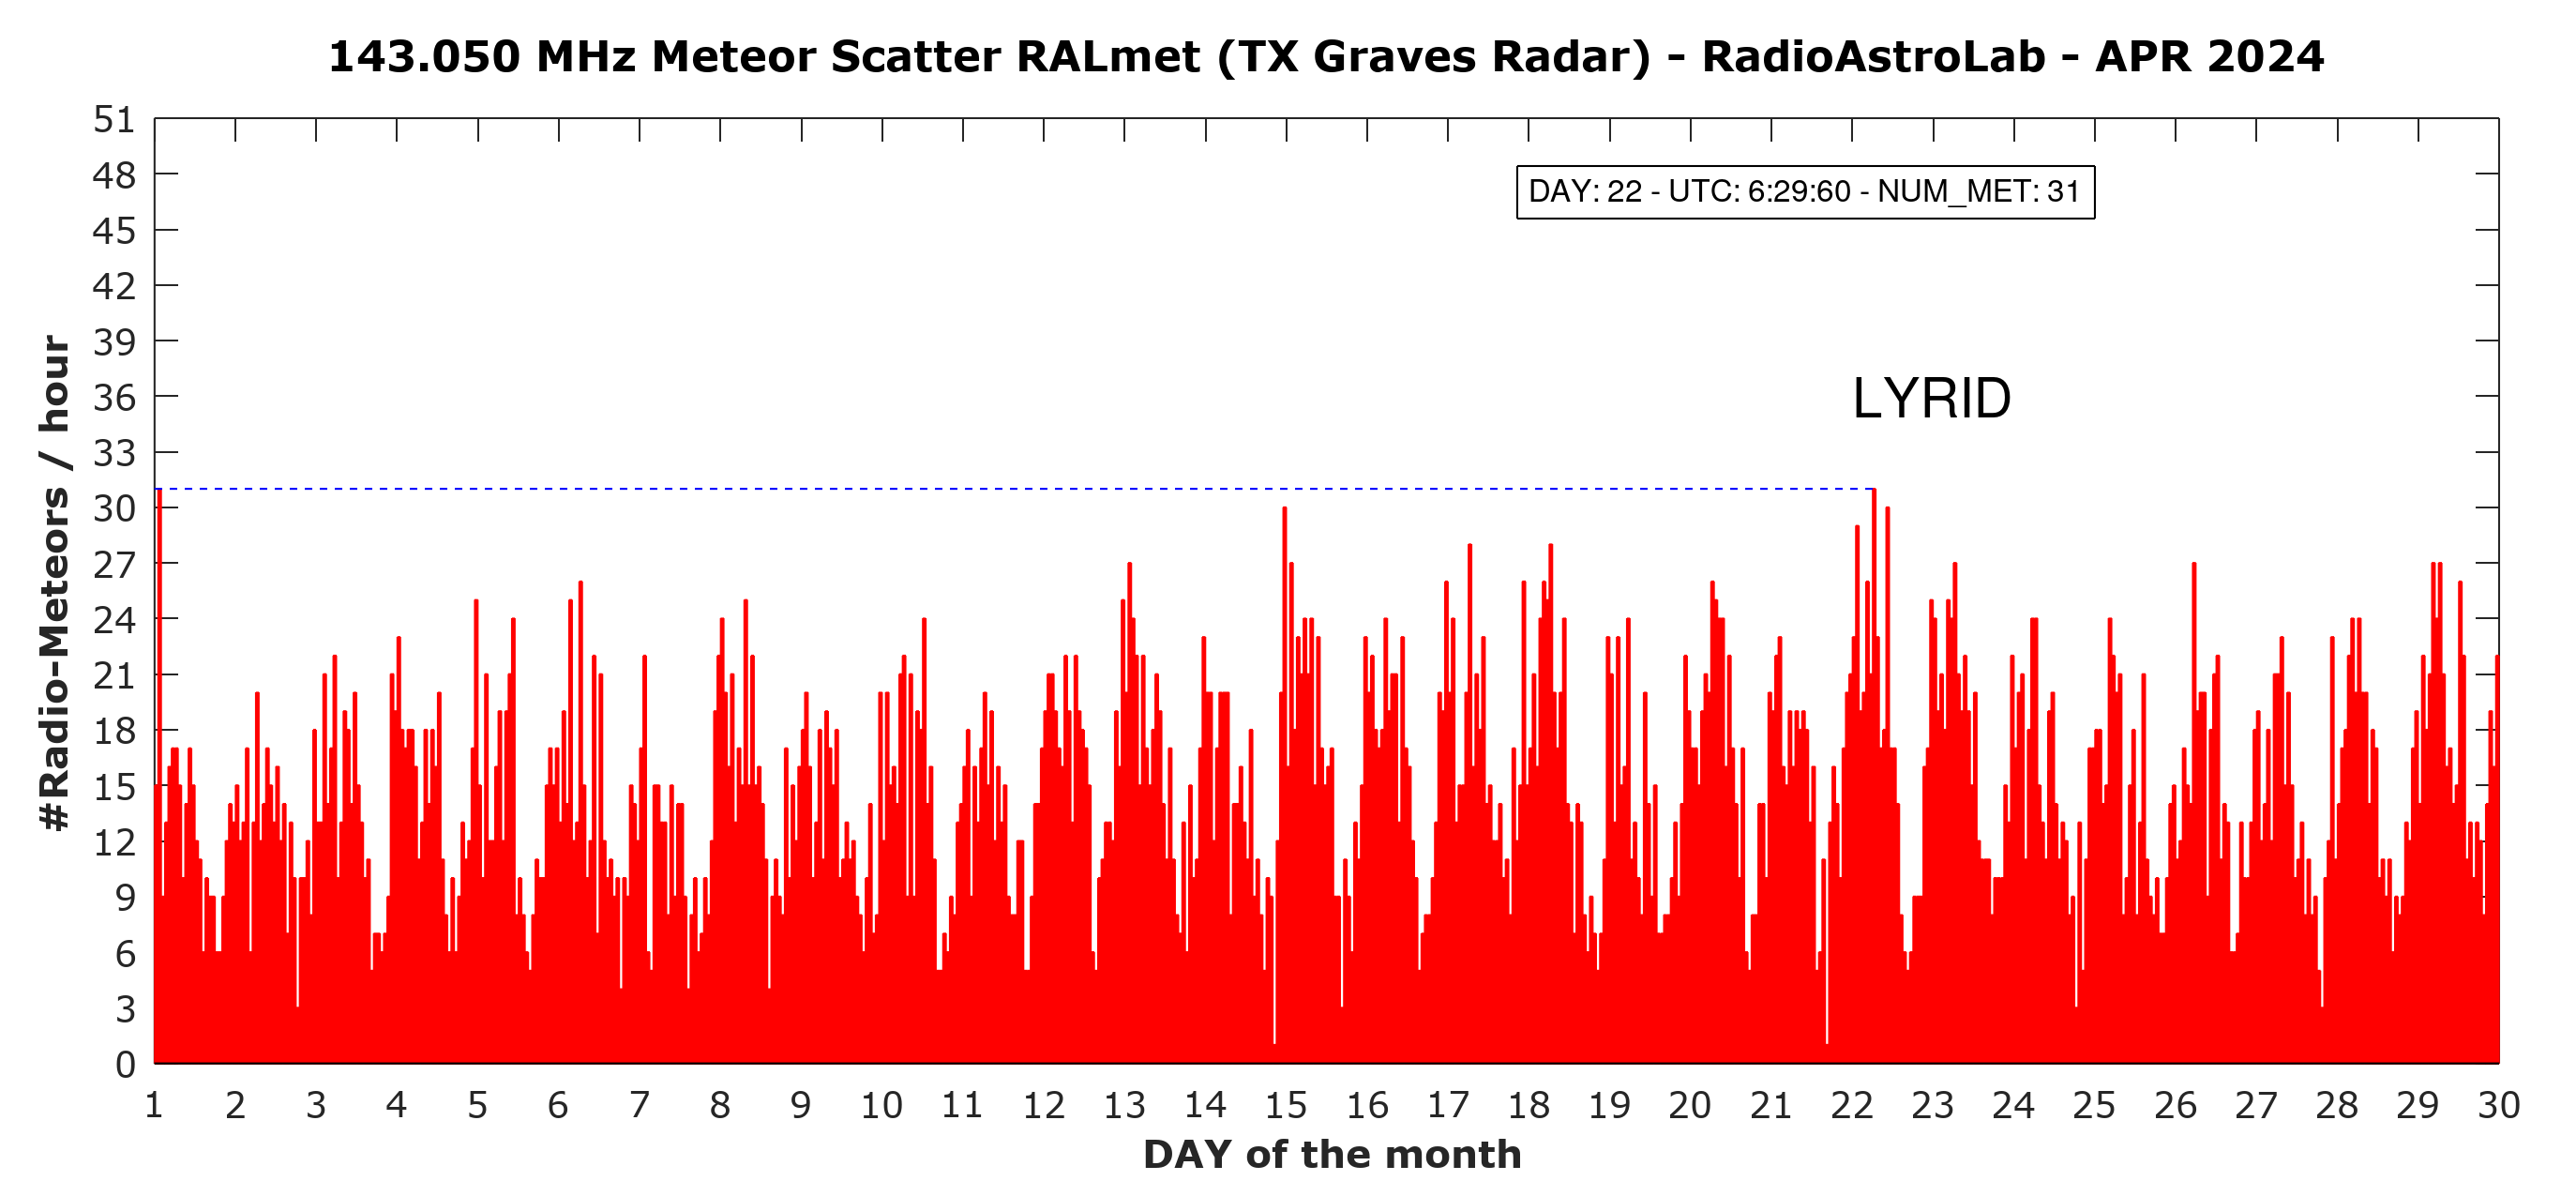 Frequenza oraria dei radio-echi meteorici (non corretta rispetto al background sporadico).